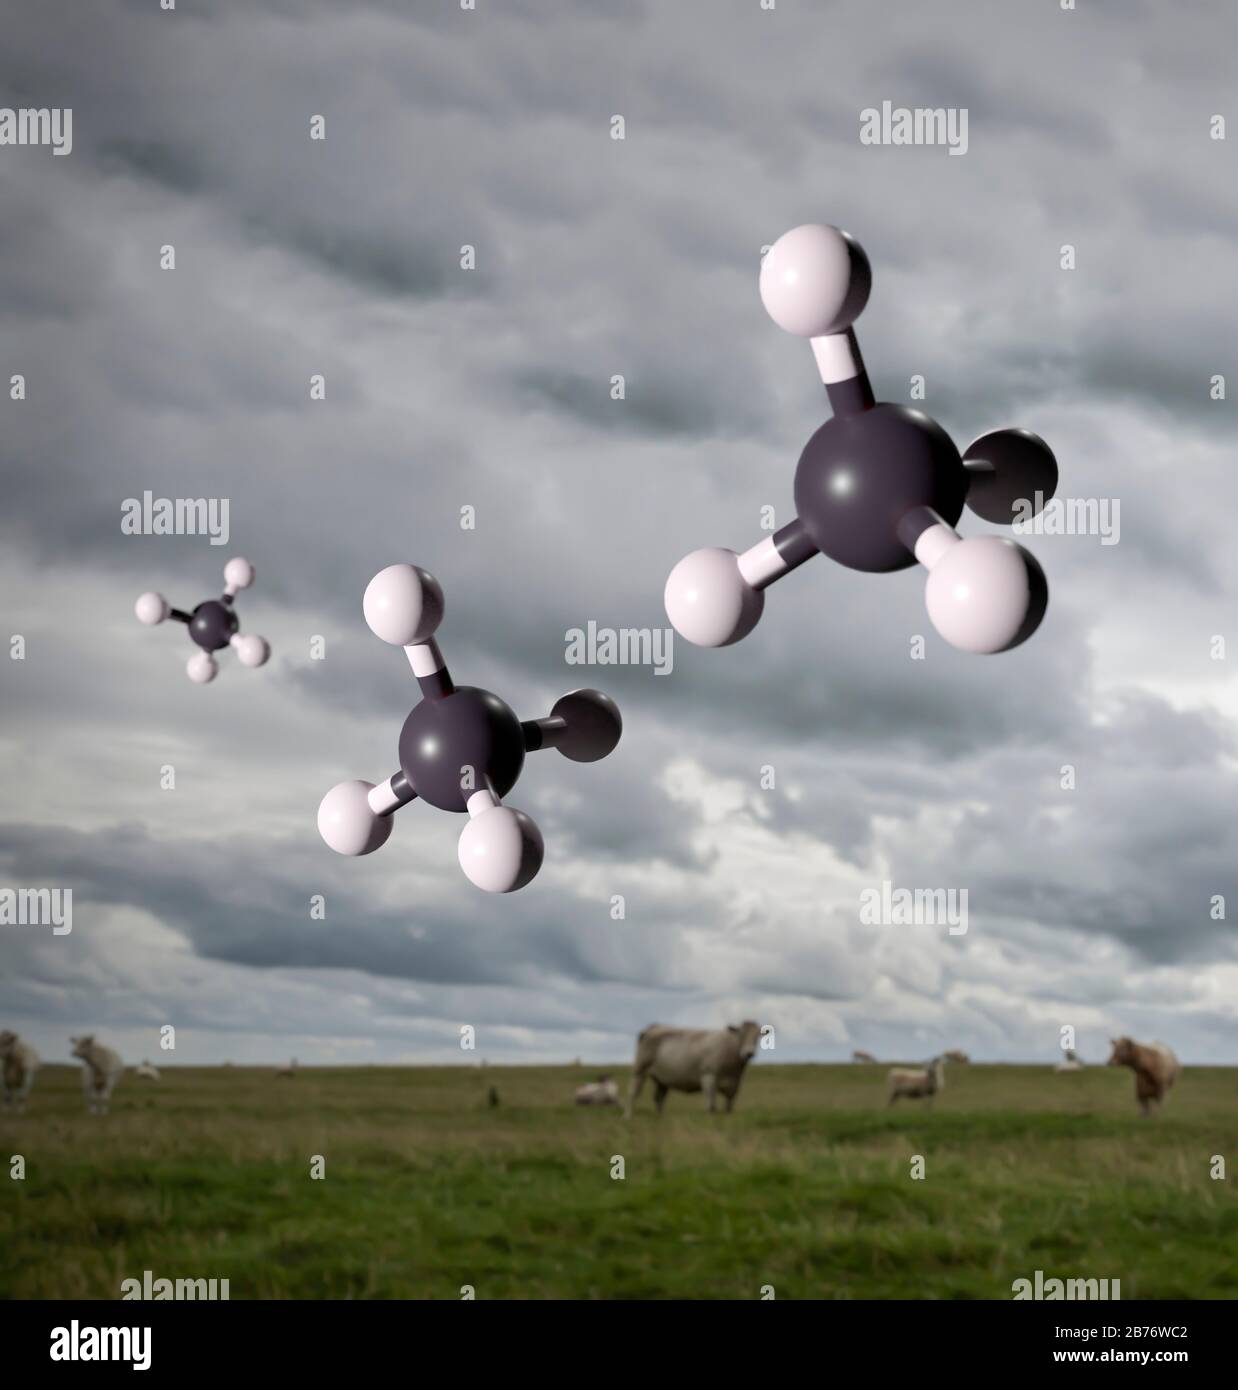 Molekulare Modelle von Methangas vor dem Hintergrund von Rindern und Schafen. Die Wiederkäuerung von Nutztieren ist eine wichtige Quelle für Methanemissionen. Obwohl weltweit viel weniger Methan ausgestoßen wird als Kohlendioxid, hat es ein globales Erwärmungspotential um das 25-fache von C2O und ist somit ein sehr bedeutsames Treibhausgas. Stockfoto